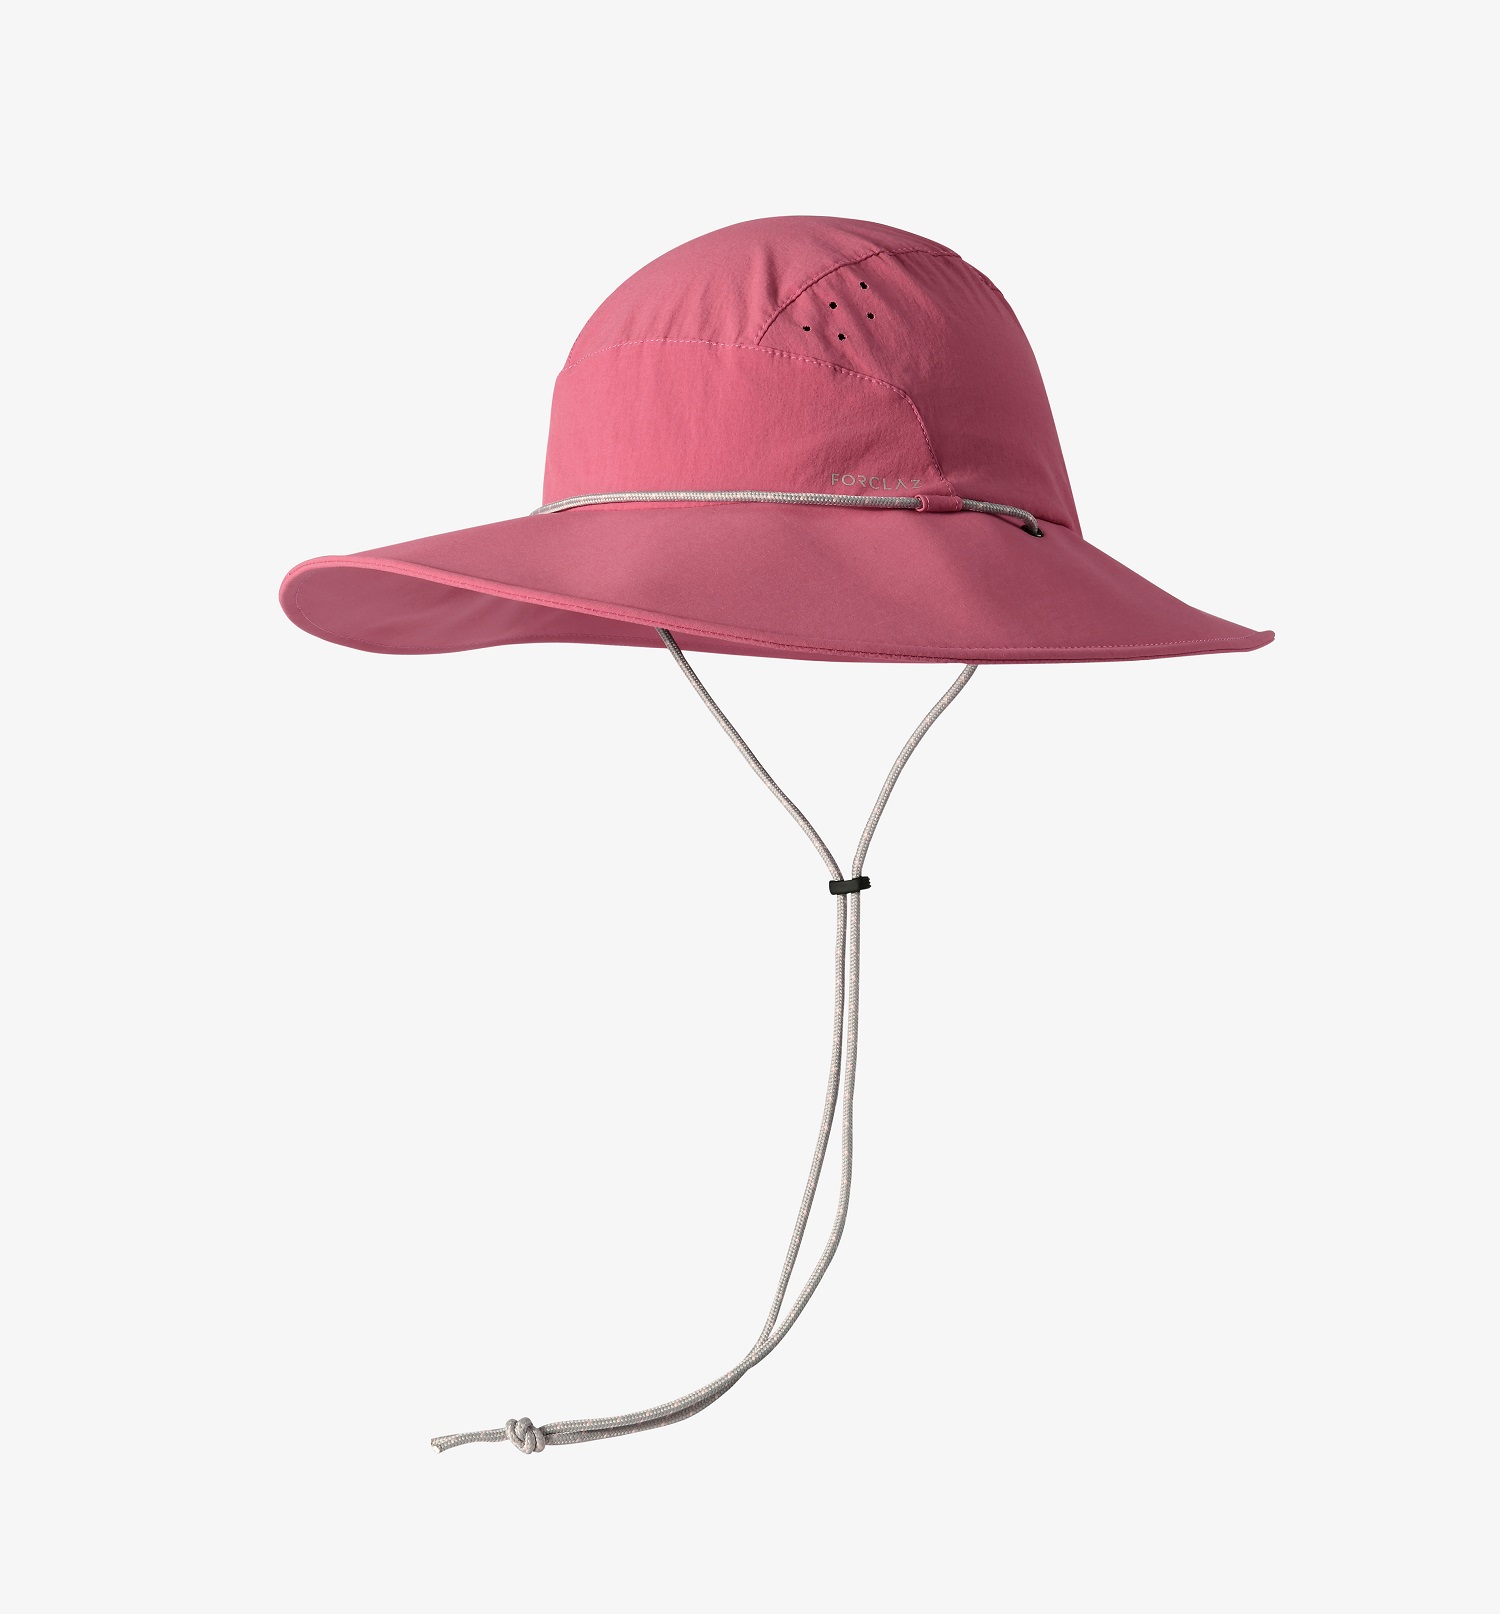 新疆旅游戴的帽子